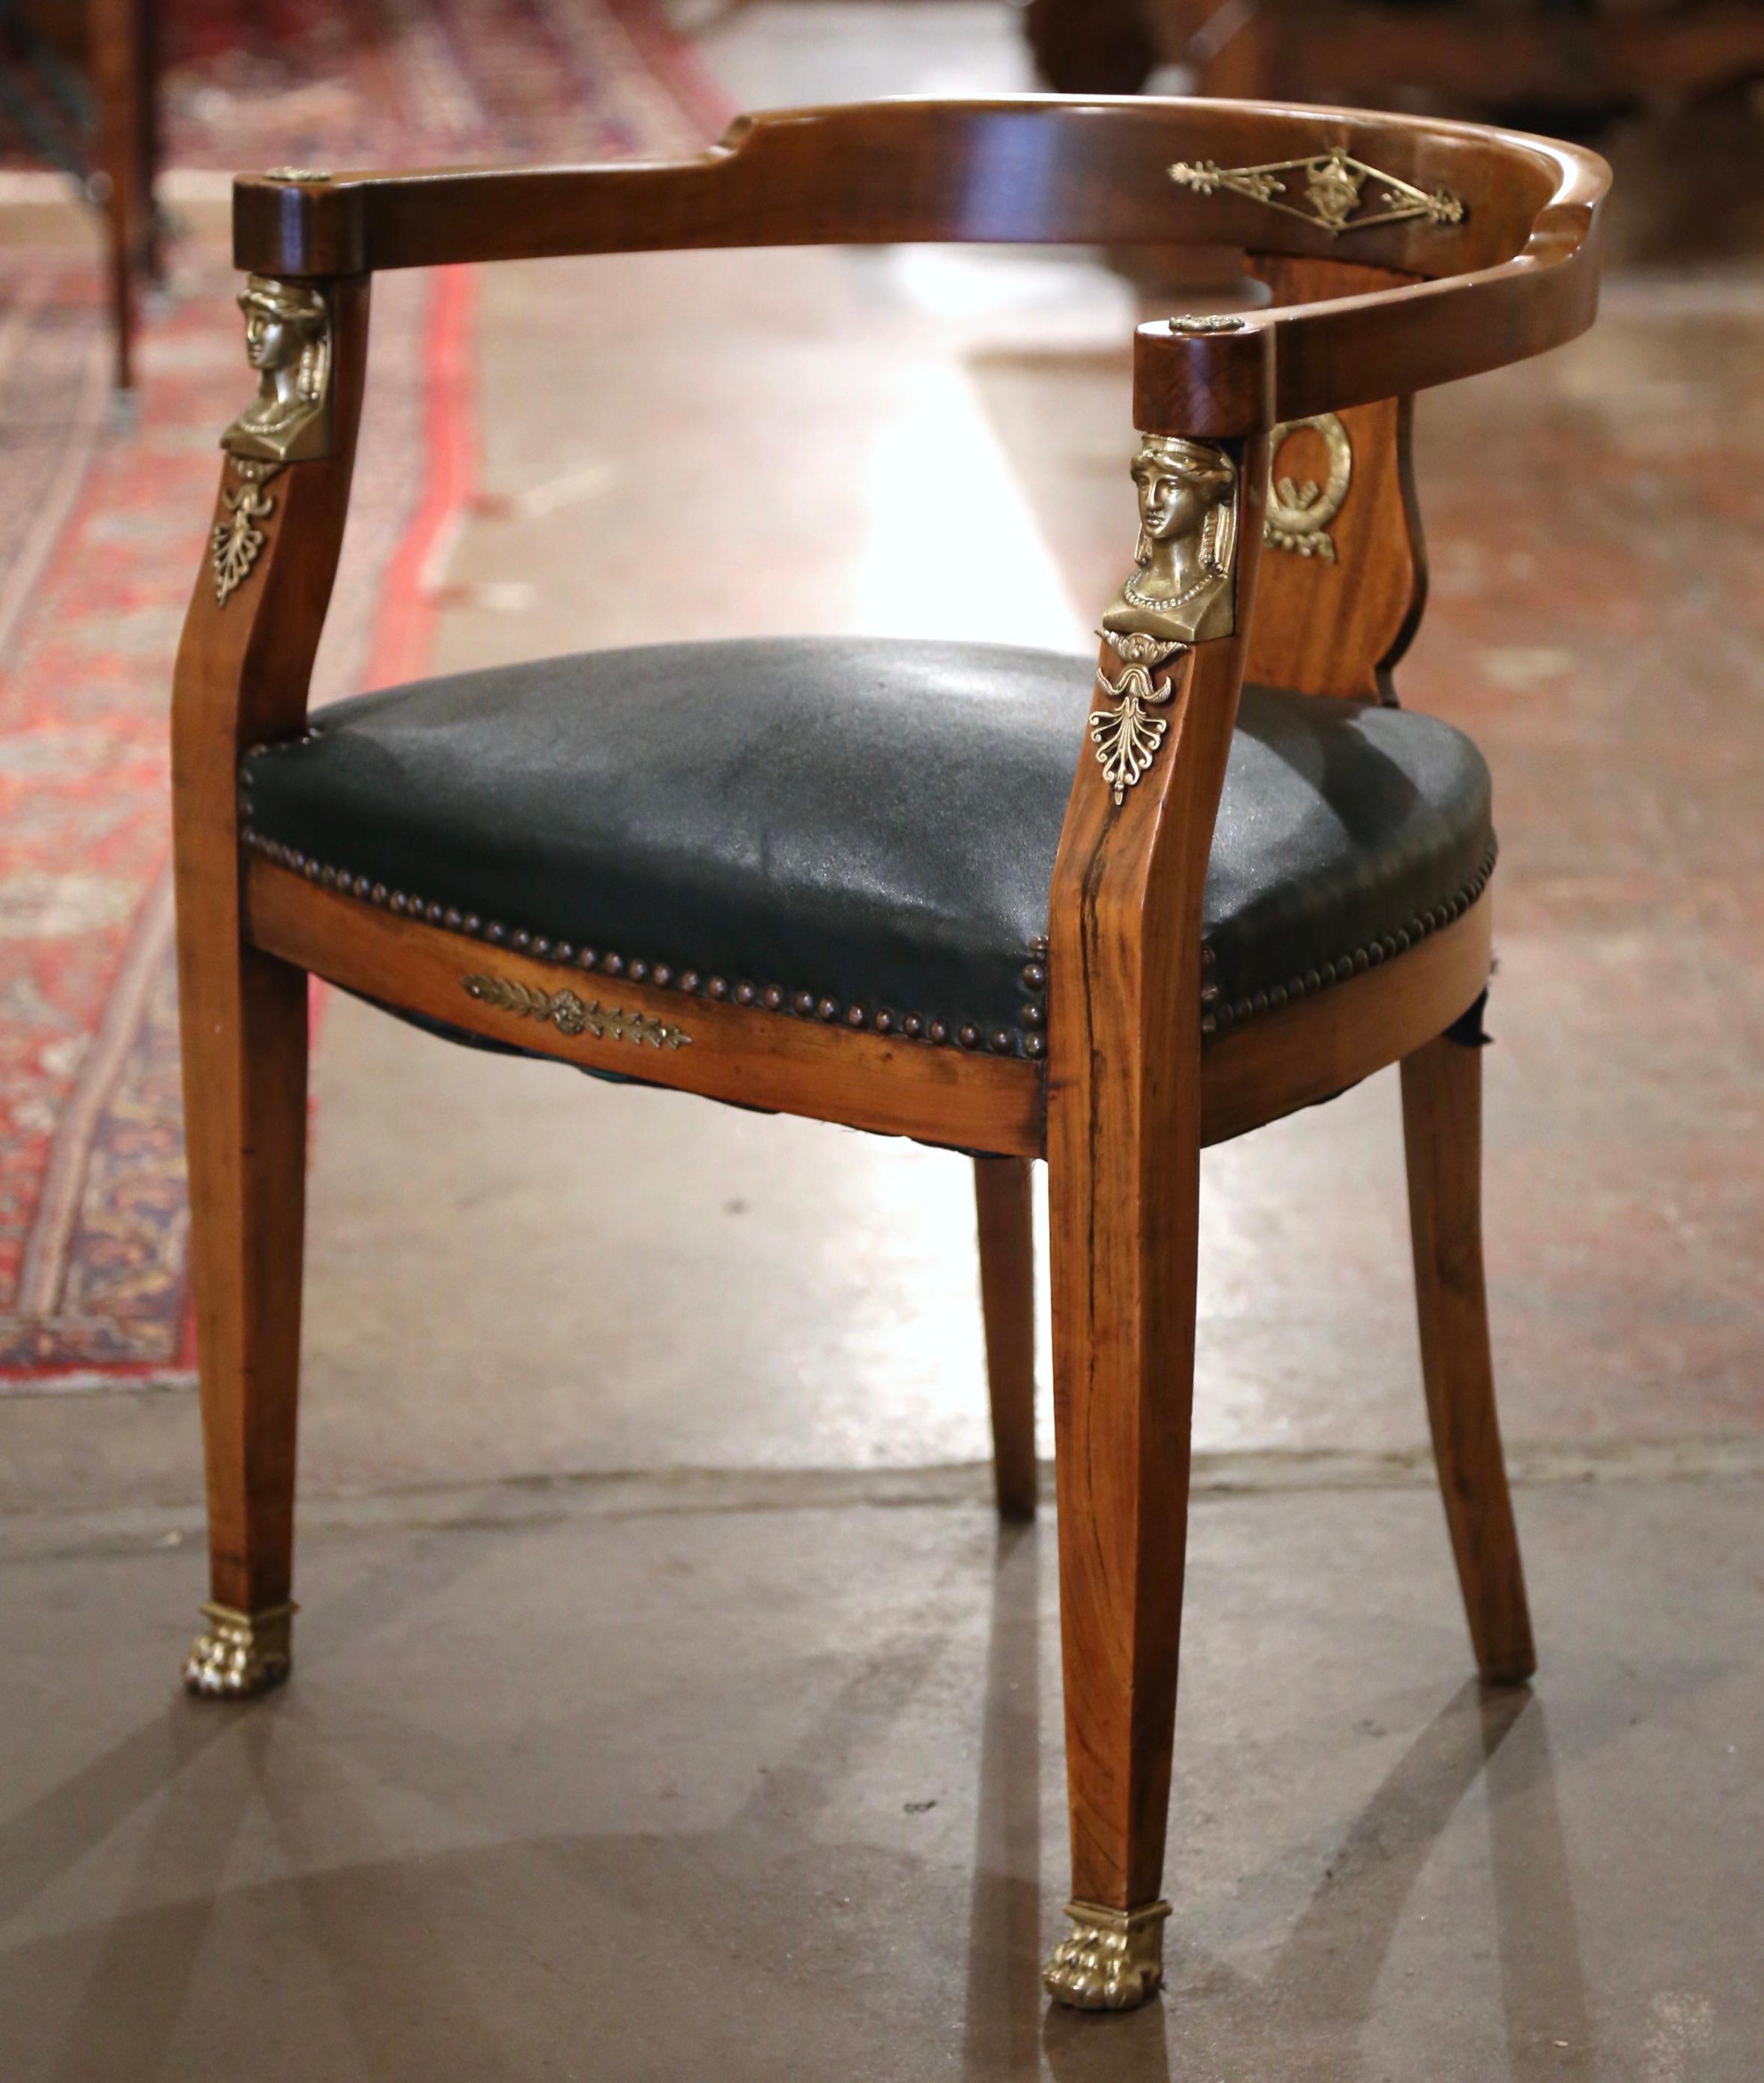 Décorez le bureau ou l'étude d'un homme avec cet élégant fauteuil ancien. Sculpté à la main en France vers 1870 et construit en merisier, le fauteuil repose sur des pieds avant fuselés terminés par des pieds sabots, sur un tablier en bombe décoré